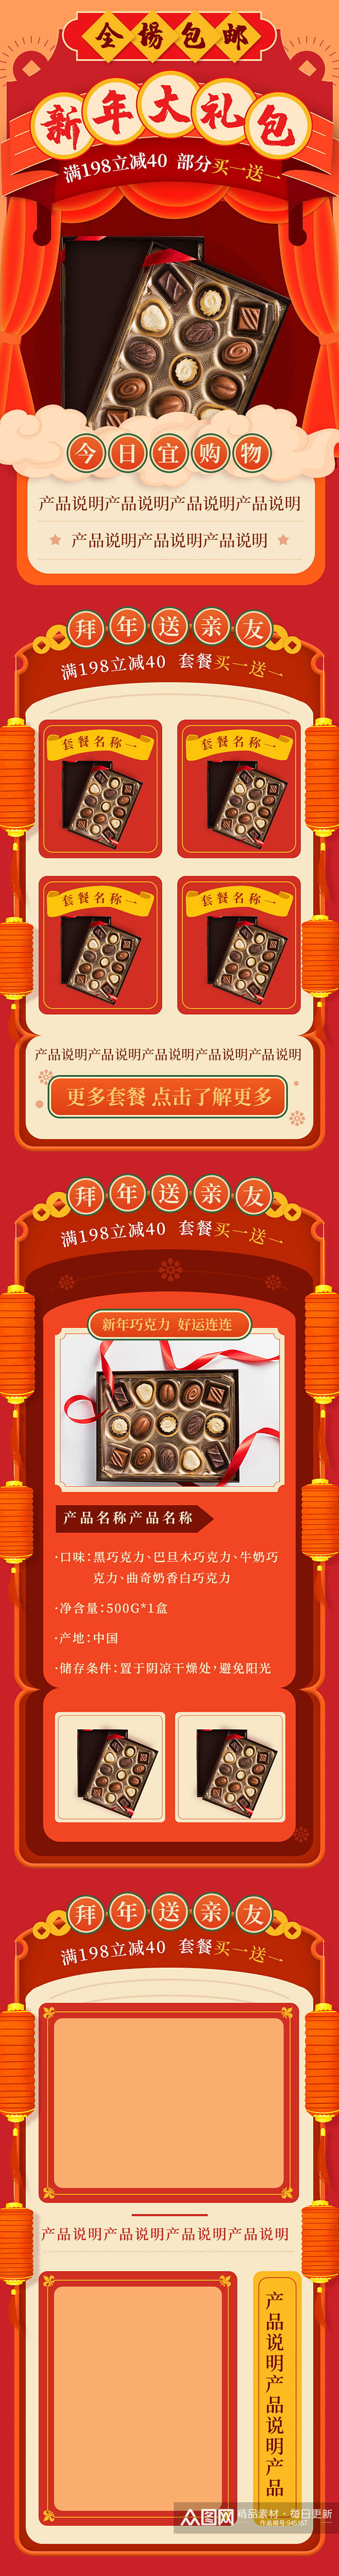 红色喜庆巧克力新年大礼盒详情页素材